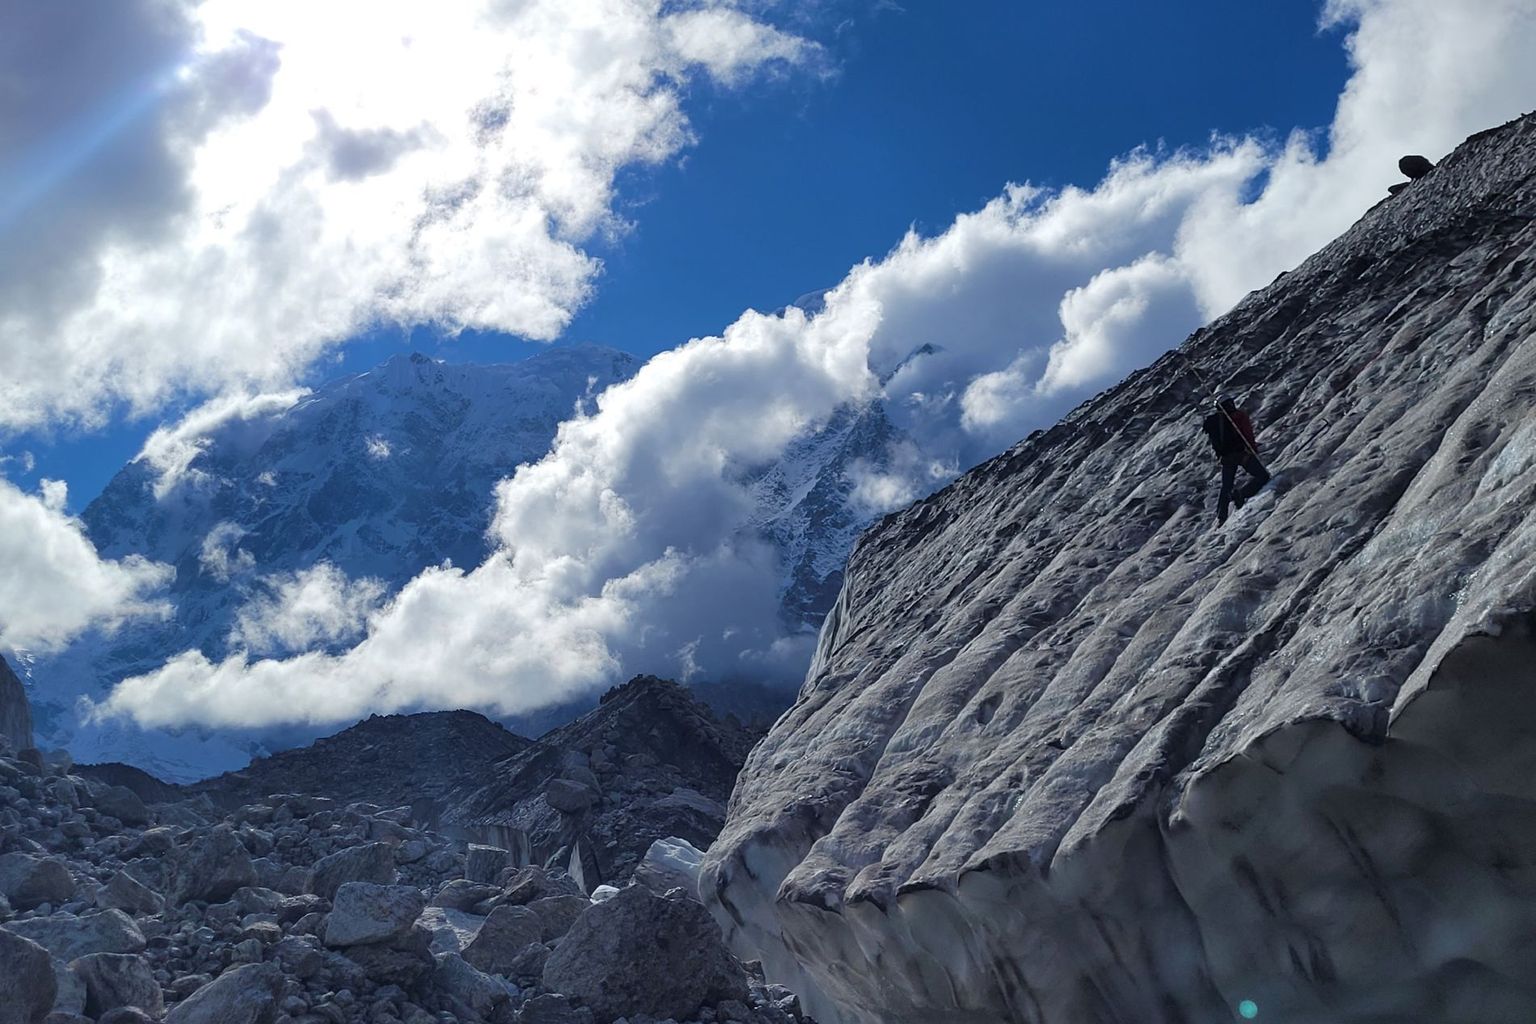 Installation de pieux pour mesurer la fonte des falaises de glace sur le glacier Satopanth (Inde)